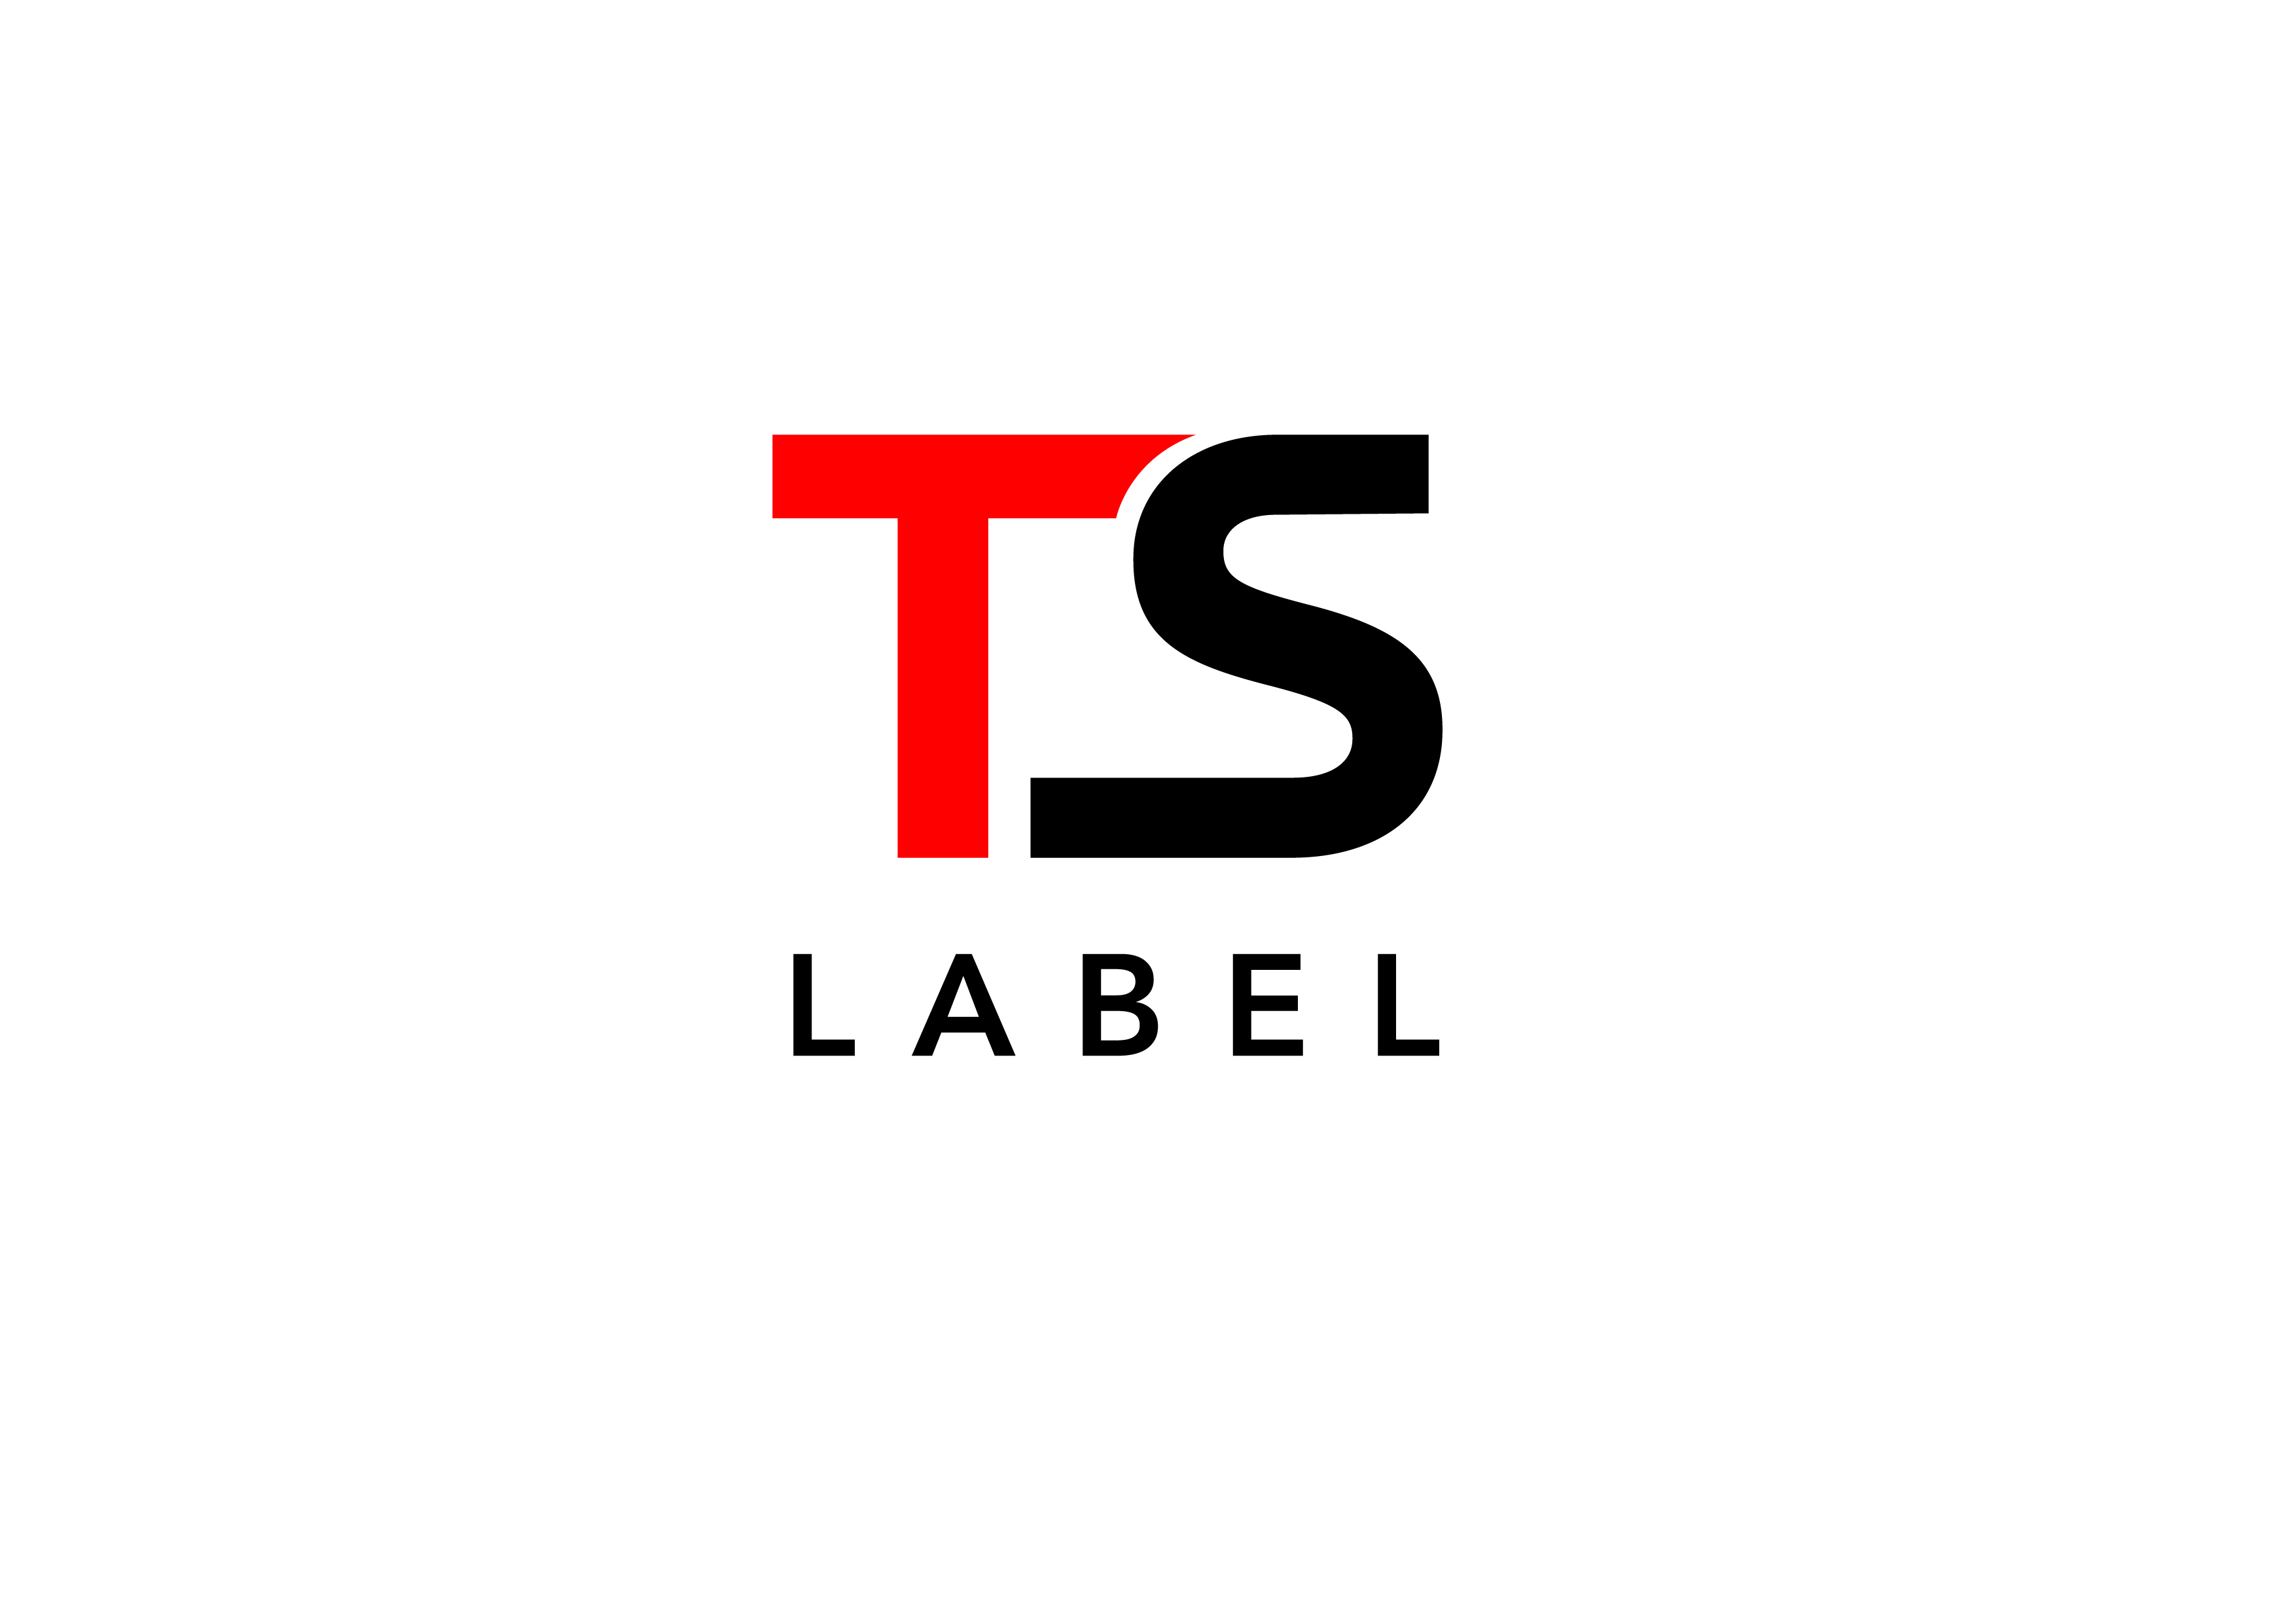 บริษัท ทีเอส เลเบล จำกัด  (สำนักงานใหญ่) logo โลโก้